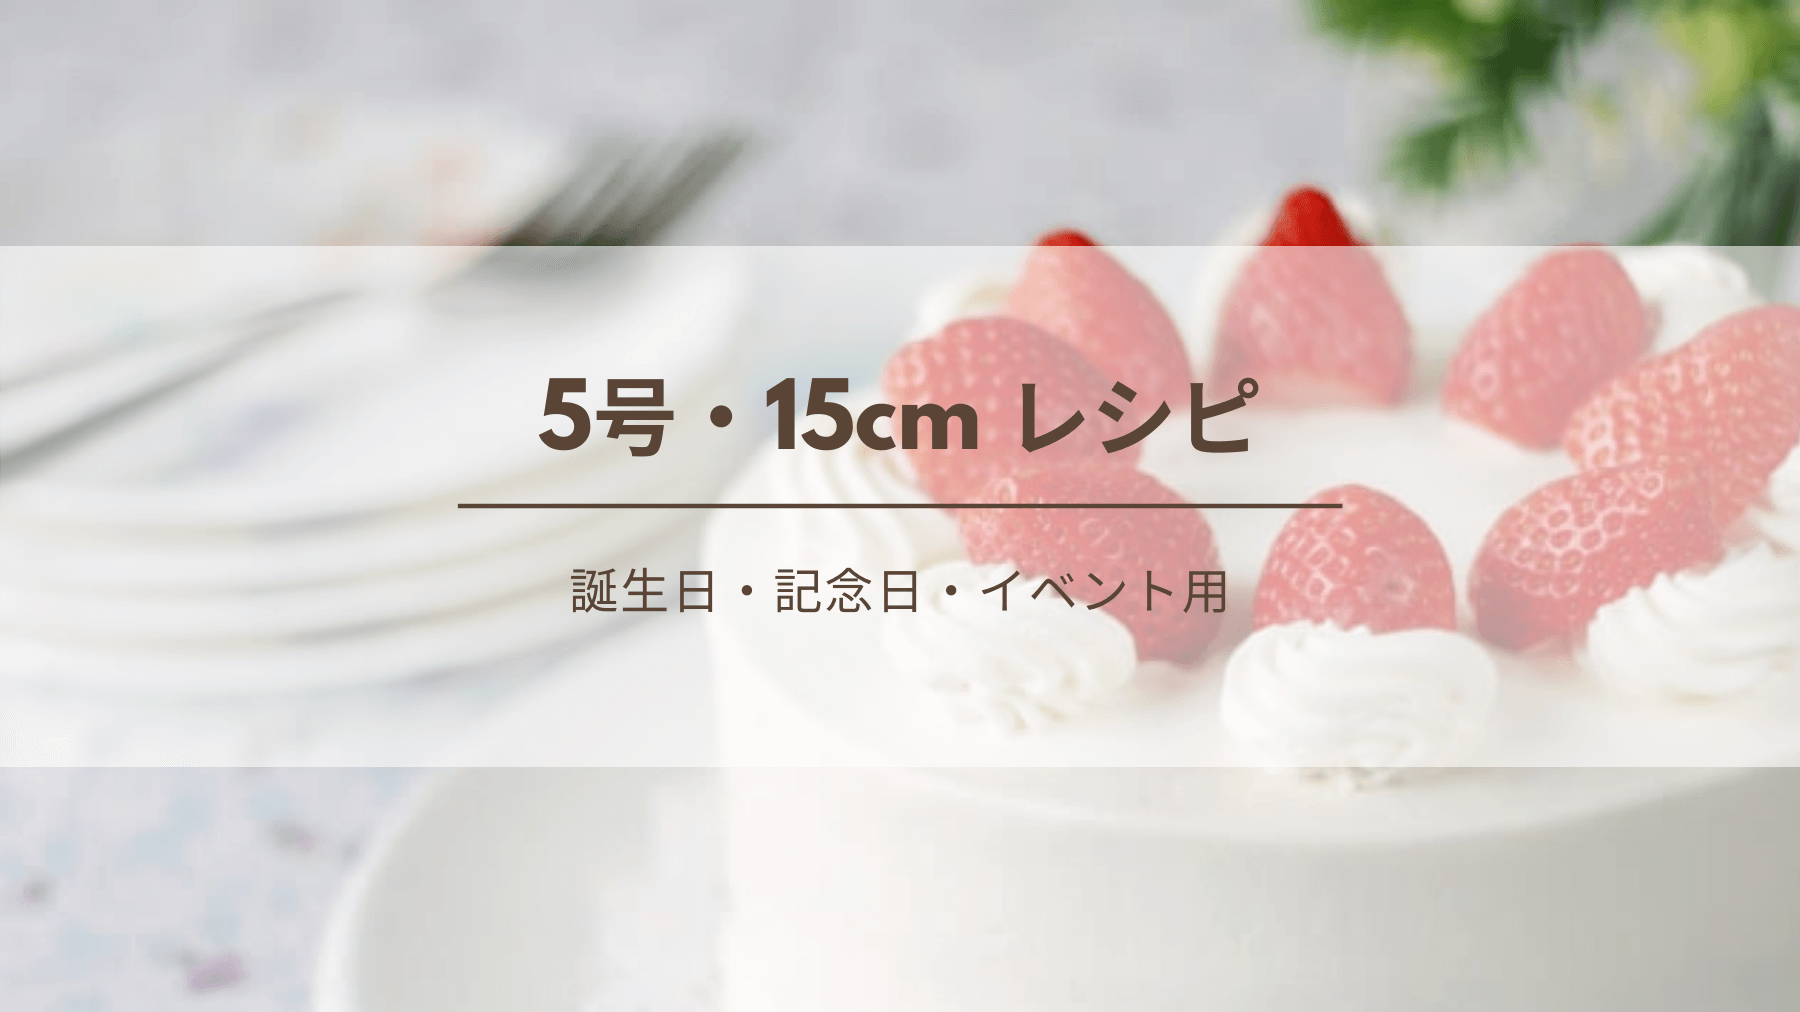 5号 15cm デコレーションケーキのレシピ 生クリームの必要量 誕生日 記念日 イベント用 Kitchen Report キッチンレポ